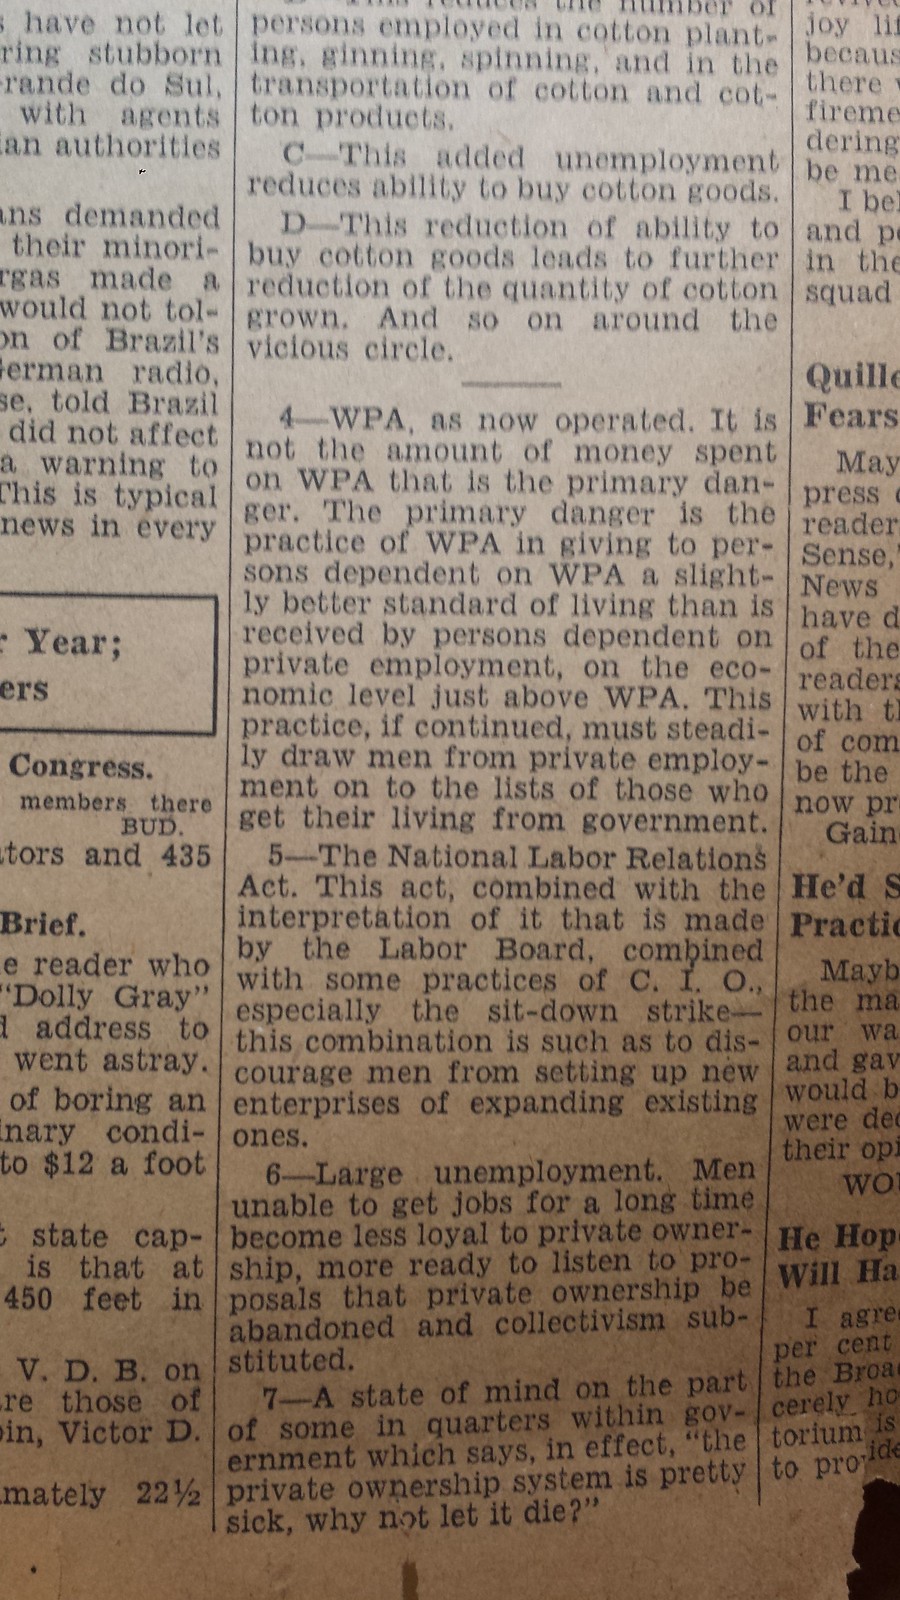 BUffalo Evening News April 20, 1939